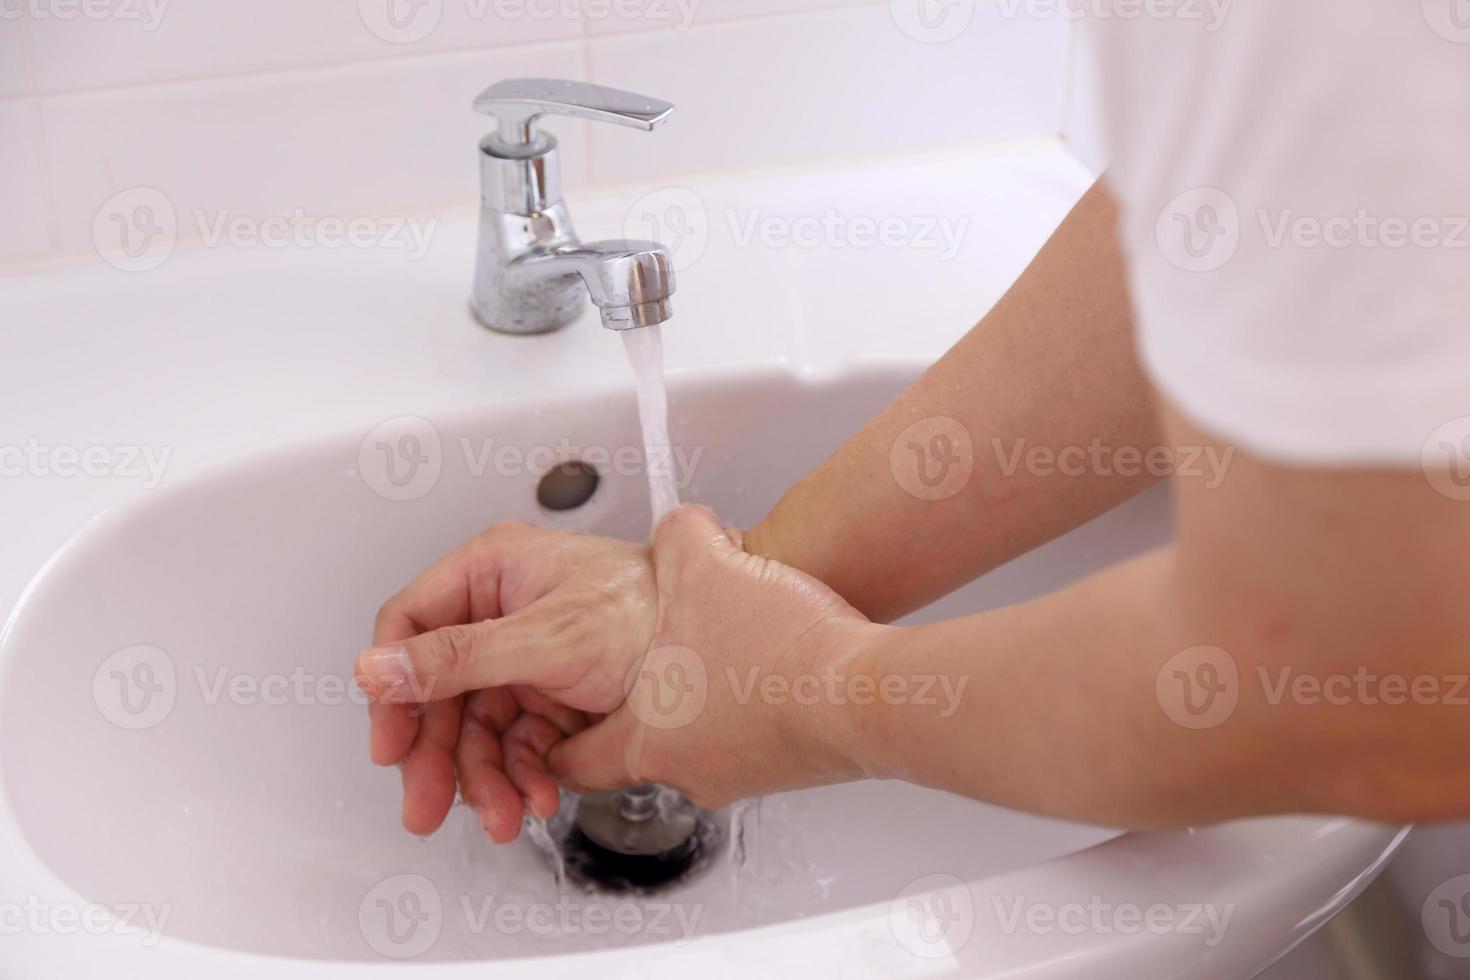 gezonde handen wassen foto